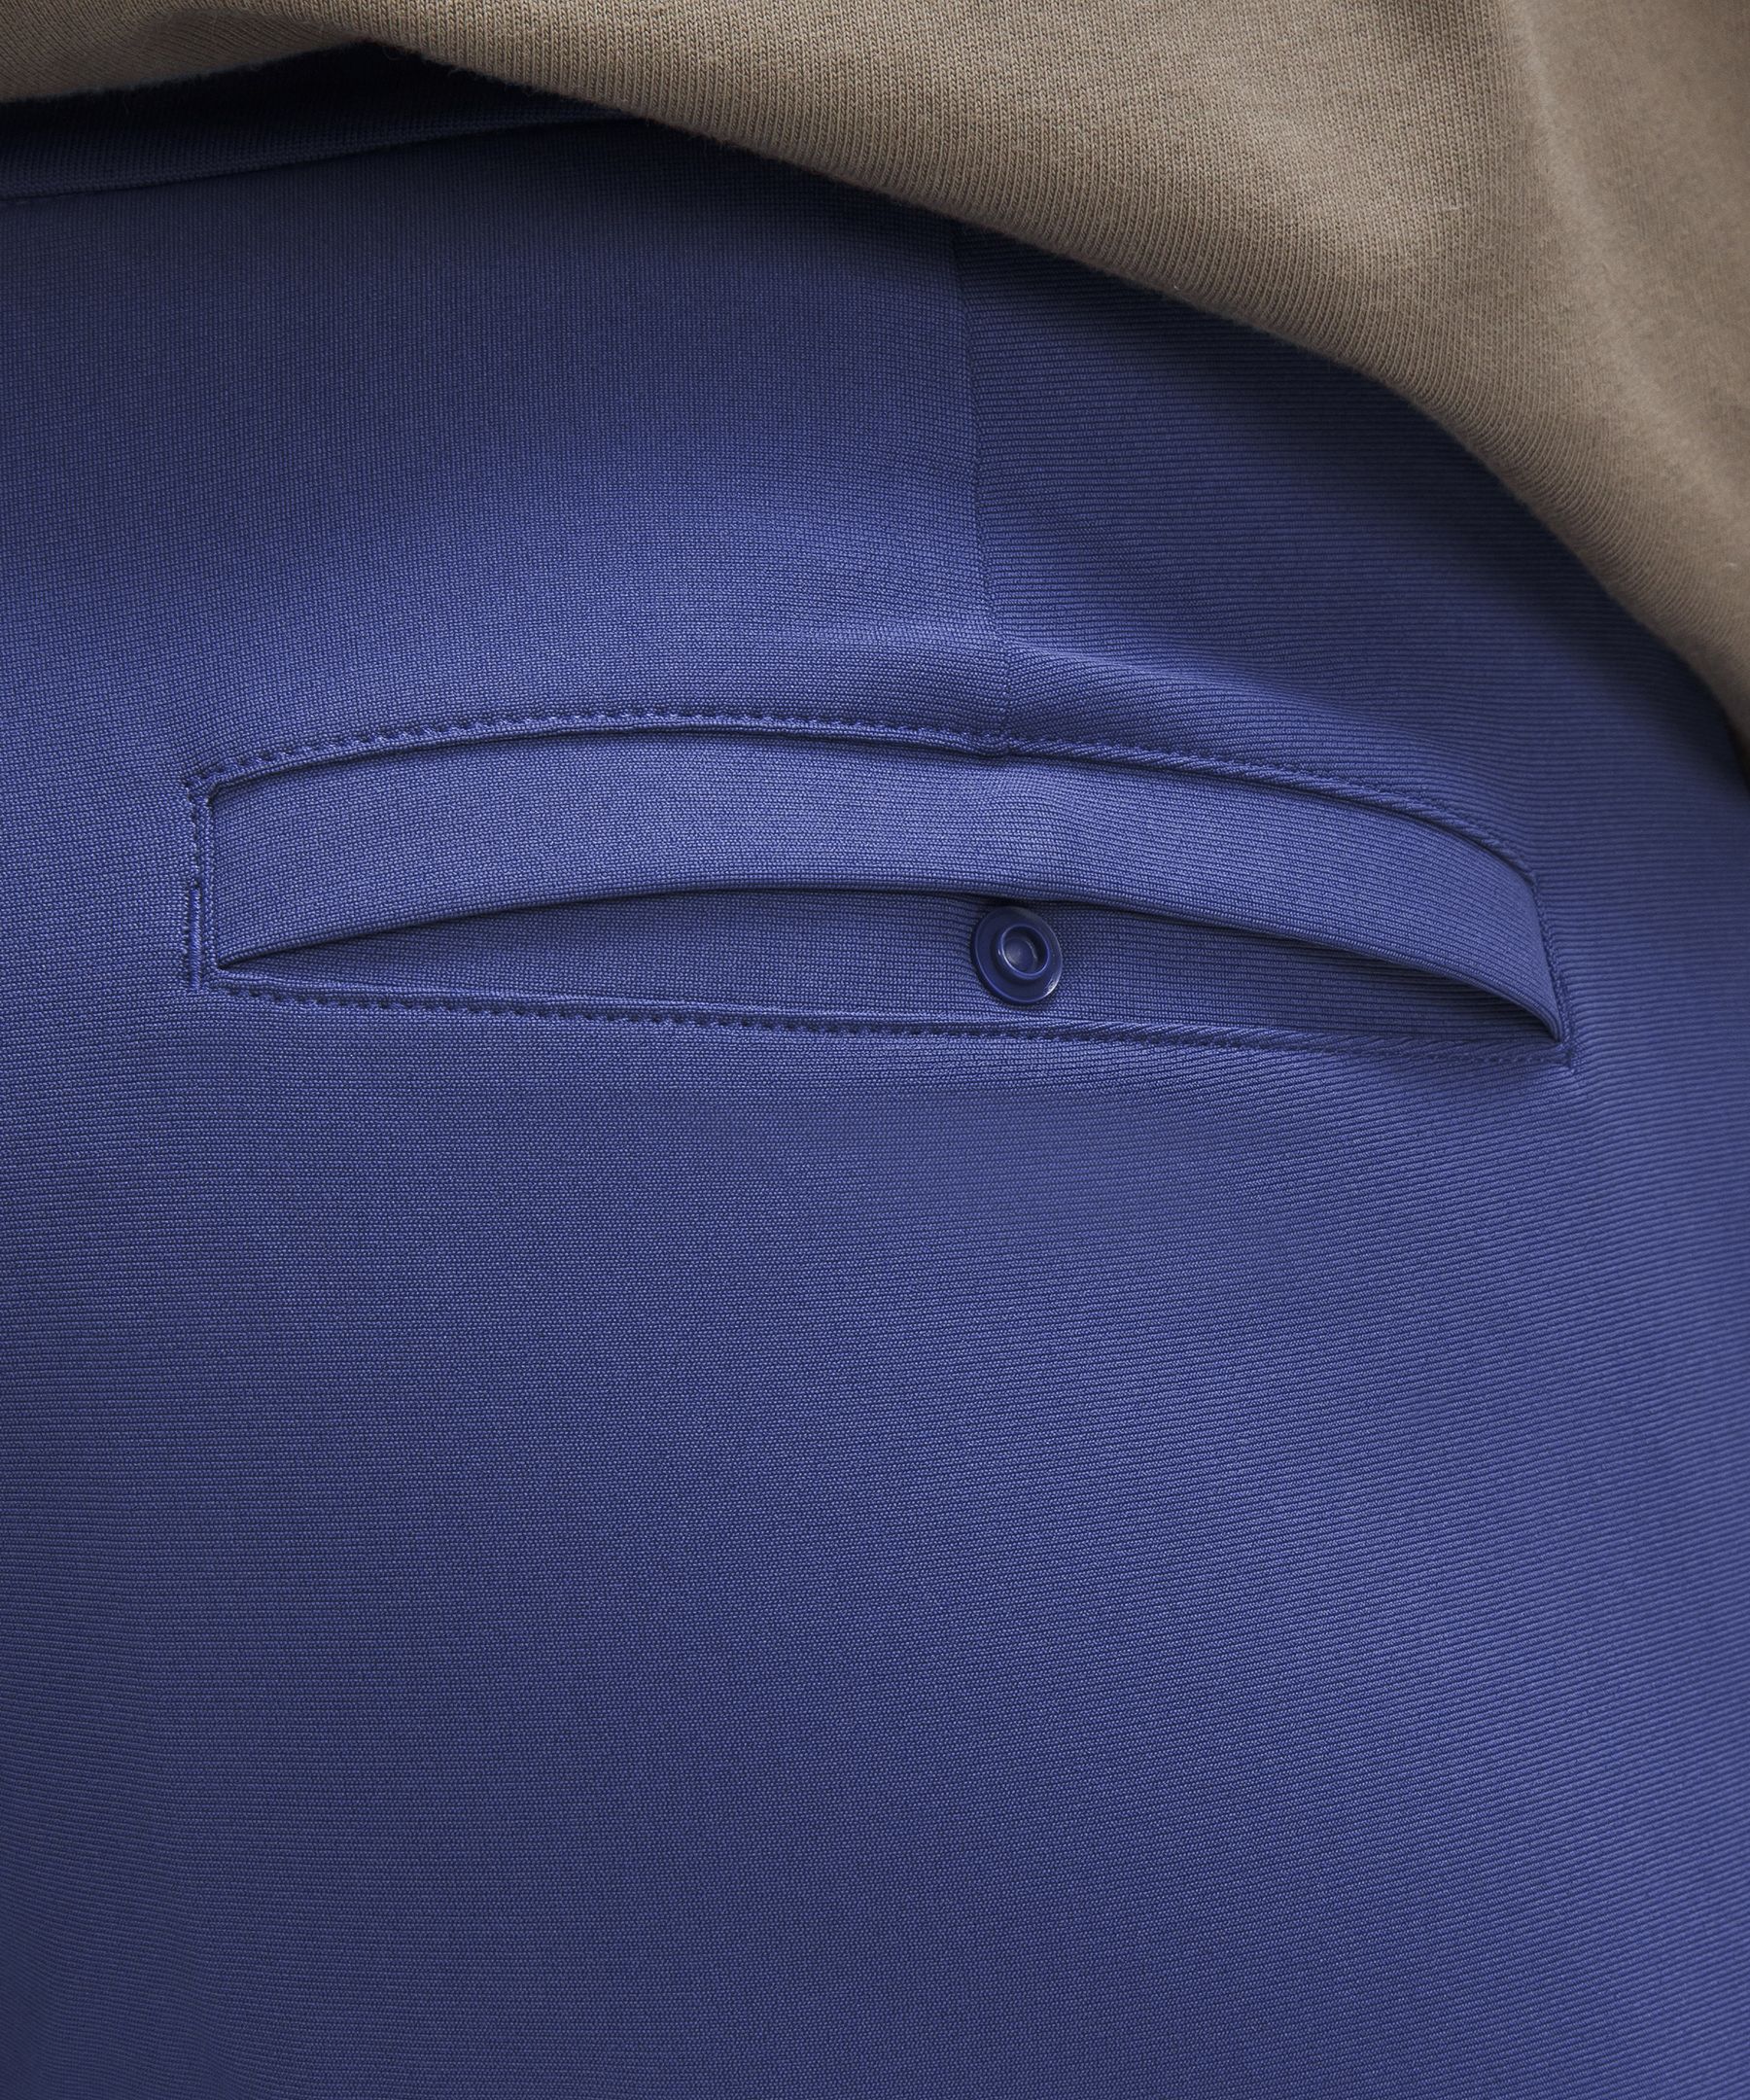 Lululemon Men's Commission Pant Slim Fit 28 x 32 *Woven Air Blue Linen BLEN  nwt - International Society of Hypertension